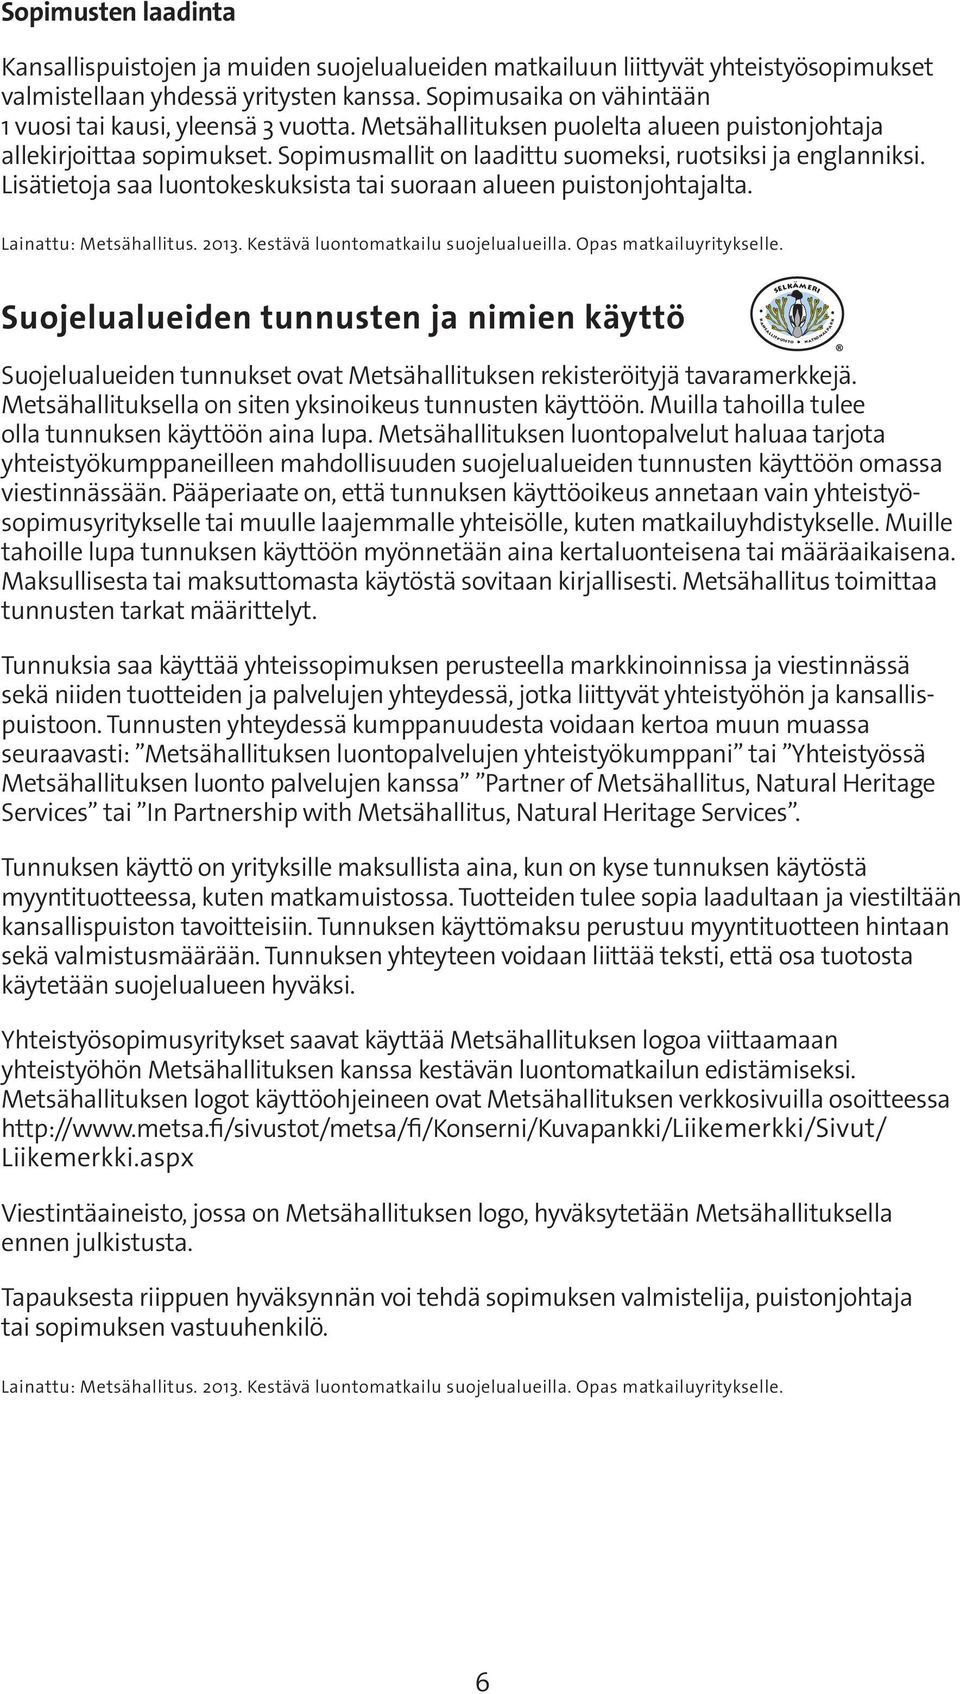 Lisätietoja saa luontokeskuksista tai suoraan alueen puistonjohtajalta. Lainattu: Metsähallitus. 2013. Kestävä luontomatkailu suojelualueilla. Opas matkailuyritykselle.